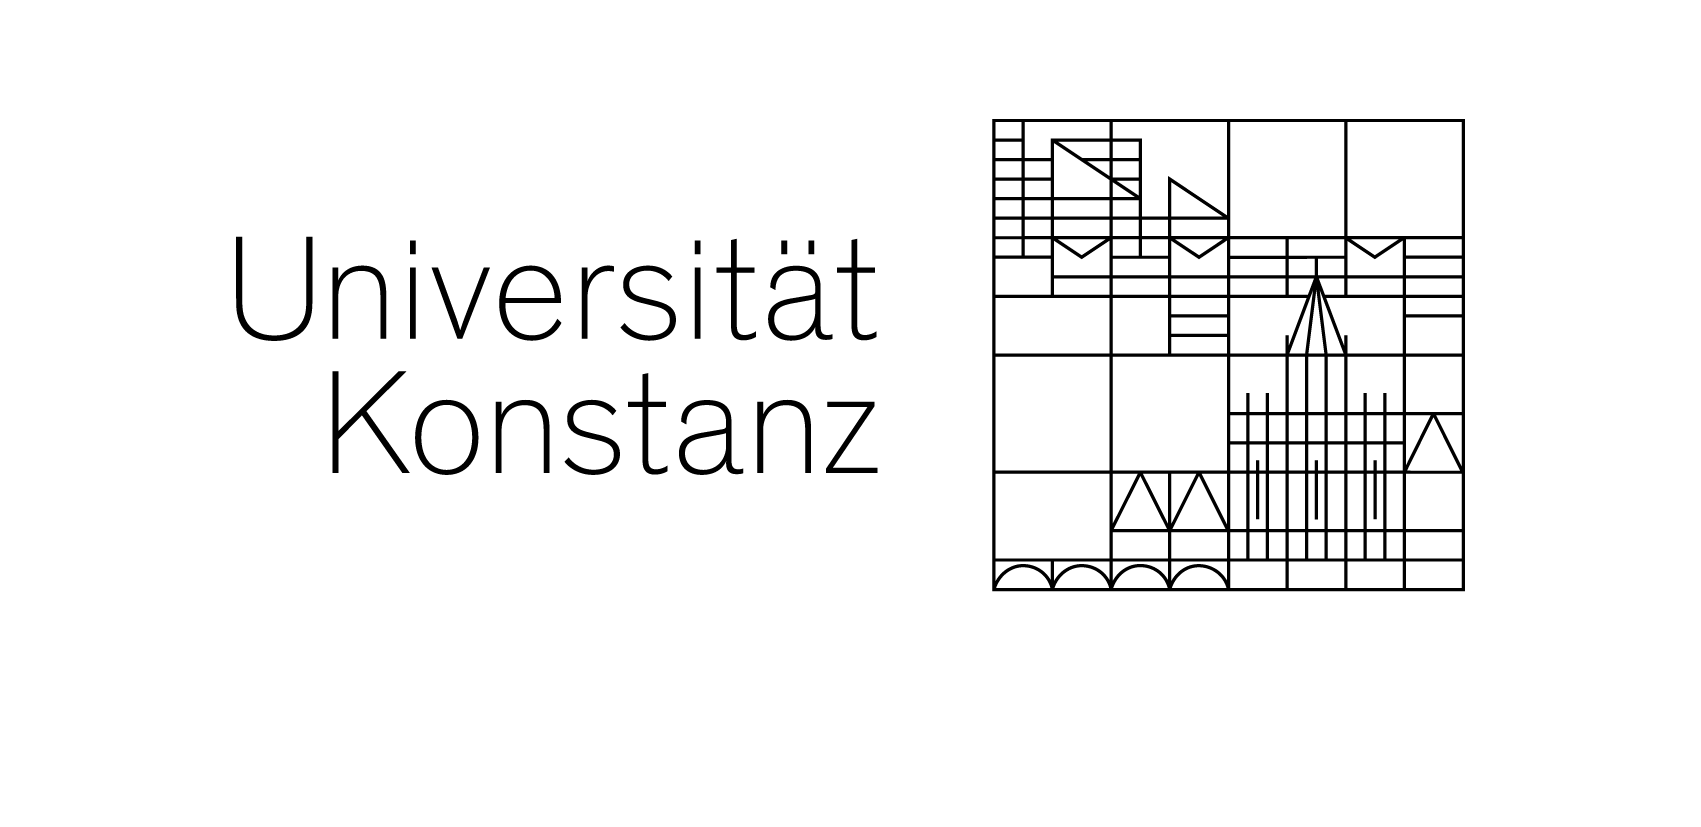 Logo der Uni Konstanz